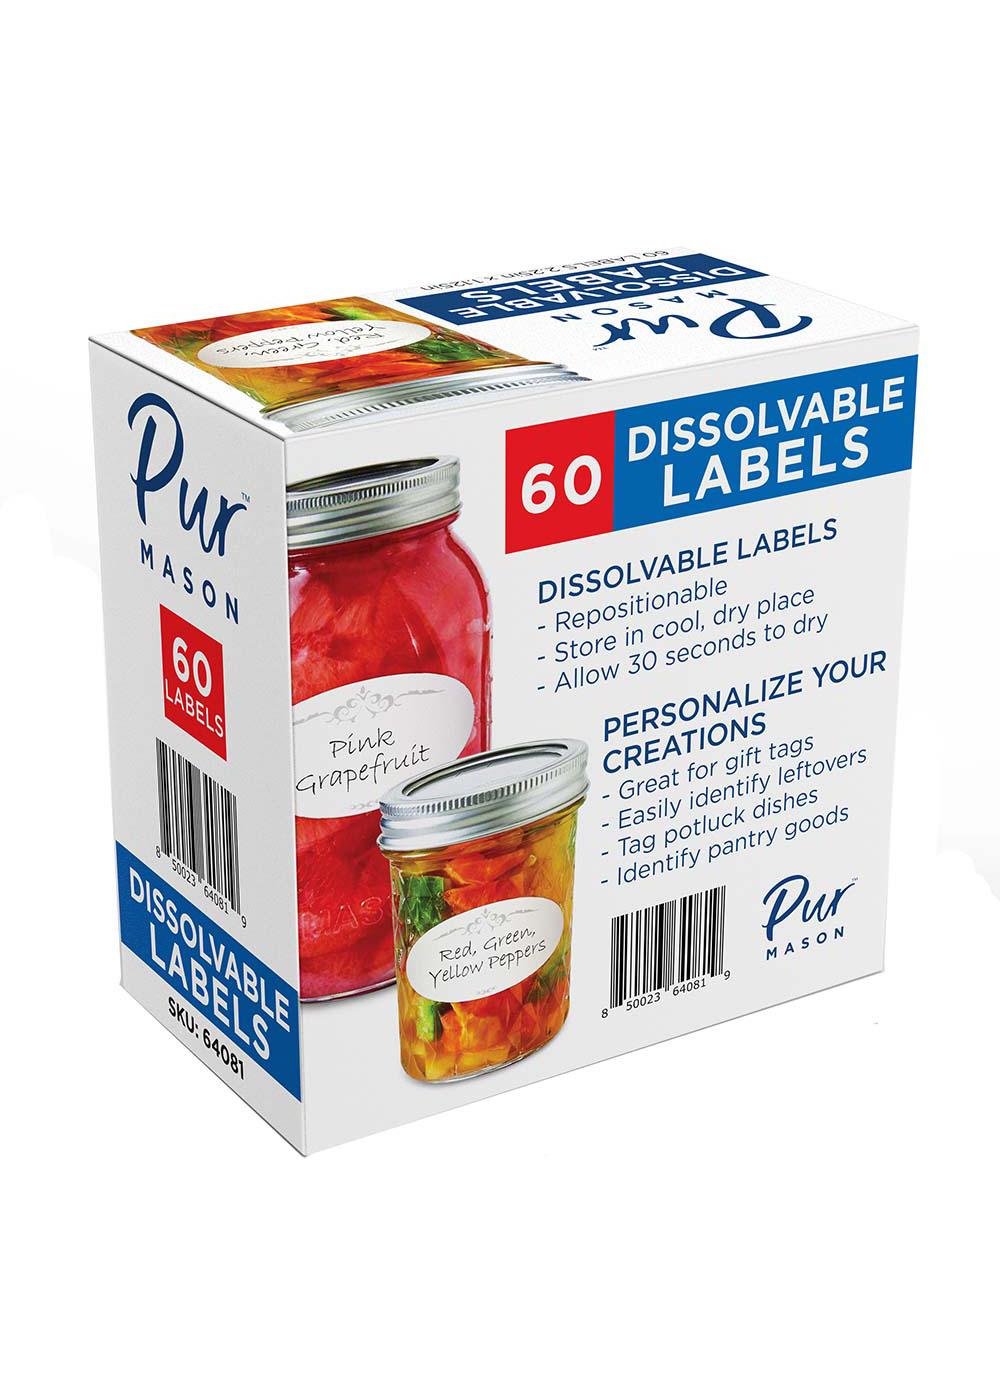 Pur Mason Dissolvable Jar Labels; image 2 of 2